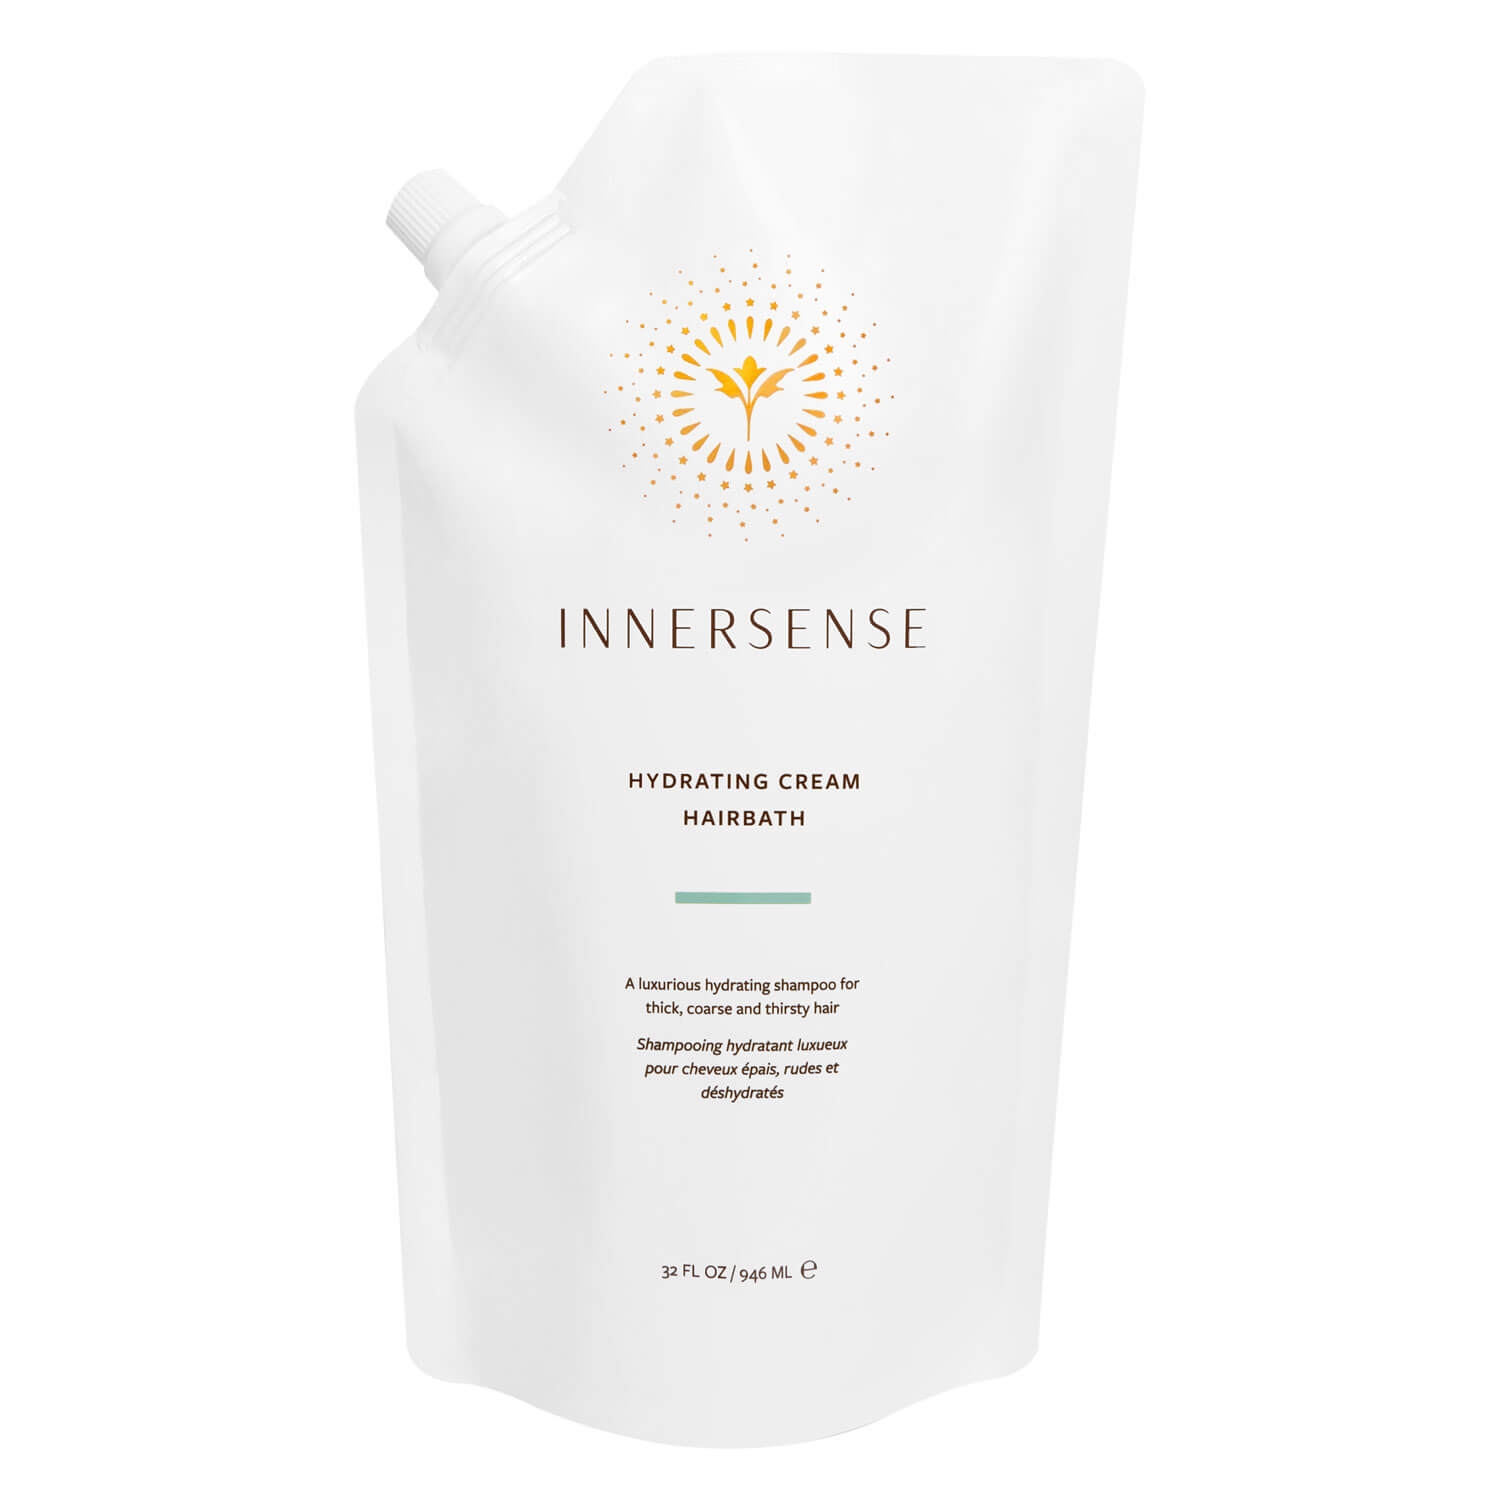 Produktbild von Innersense - Hydrating Cream Hairbath Refill